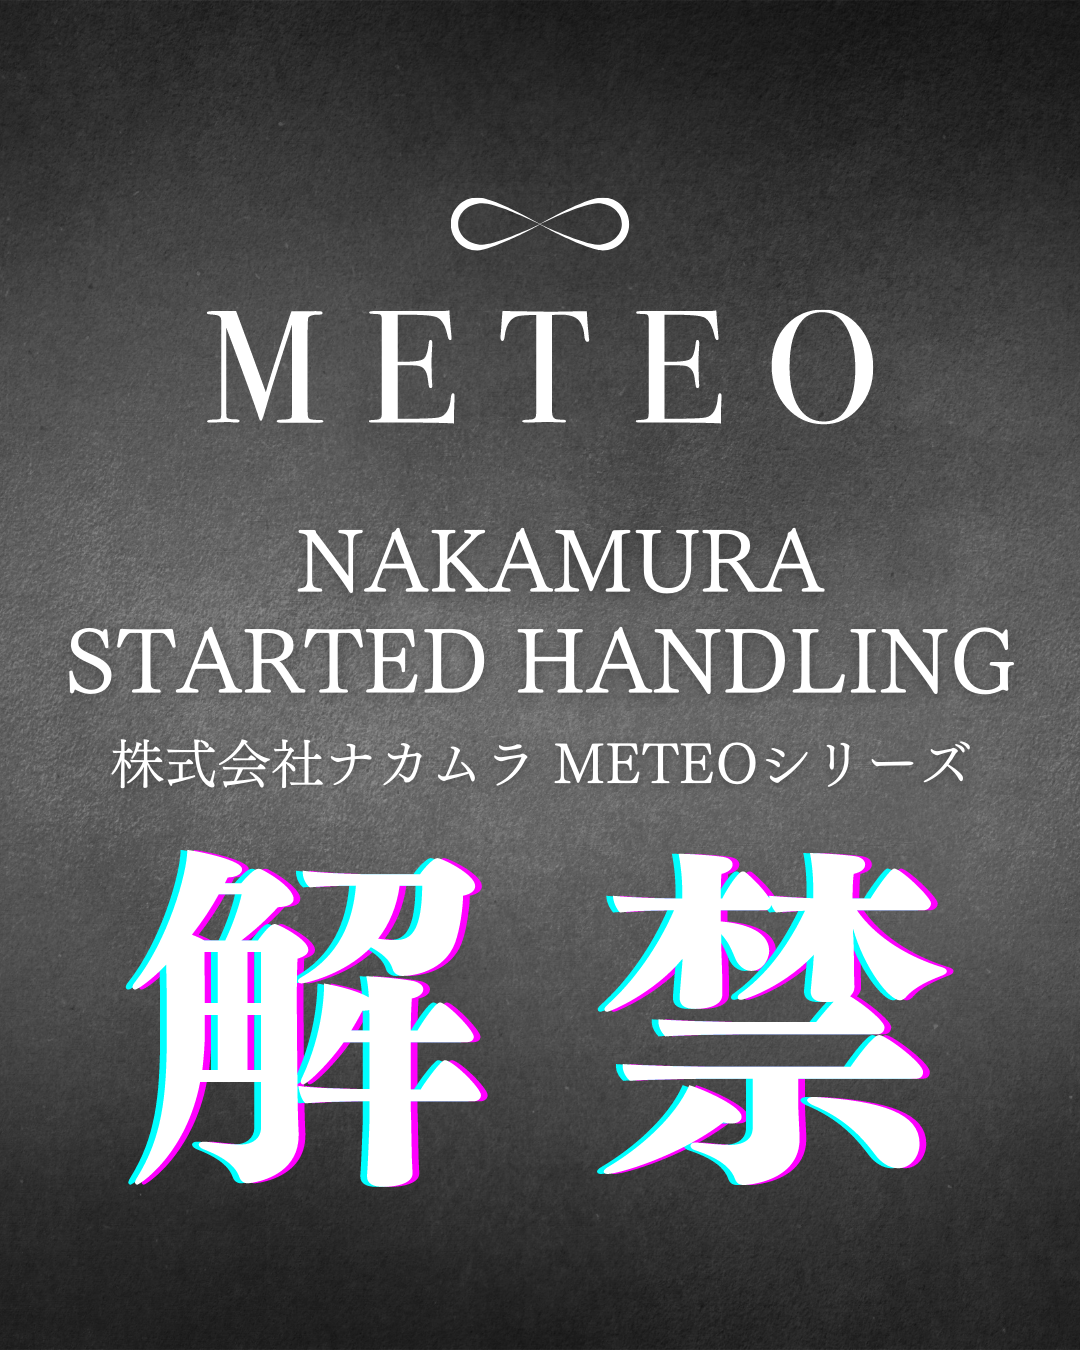 【METEO】株式会社ナカムラ『メテオ』取り扱い開始のご案内